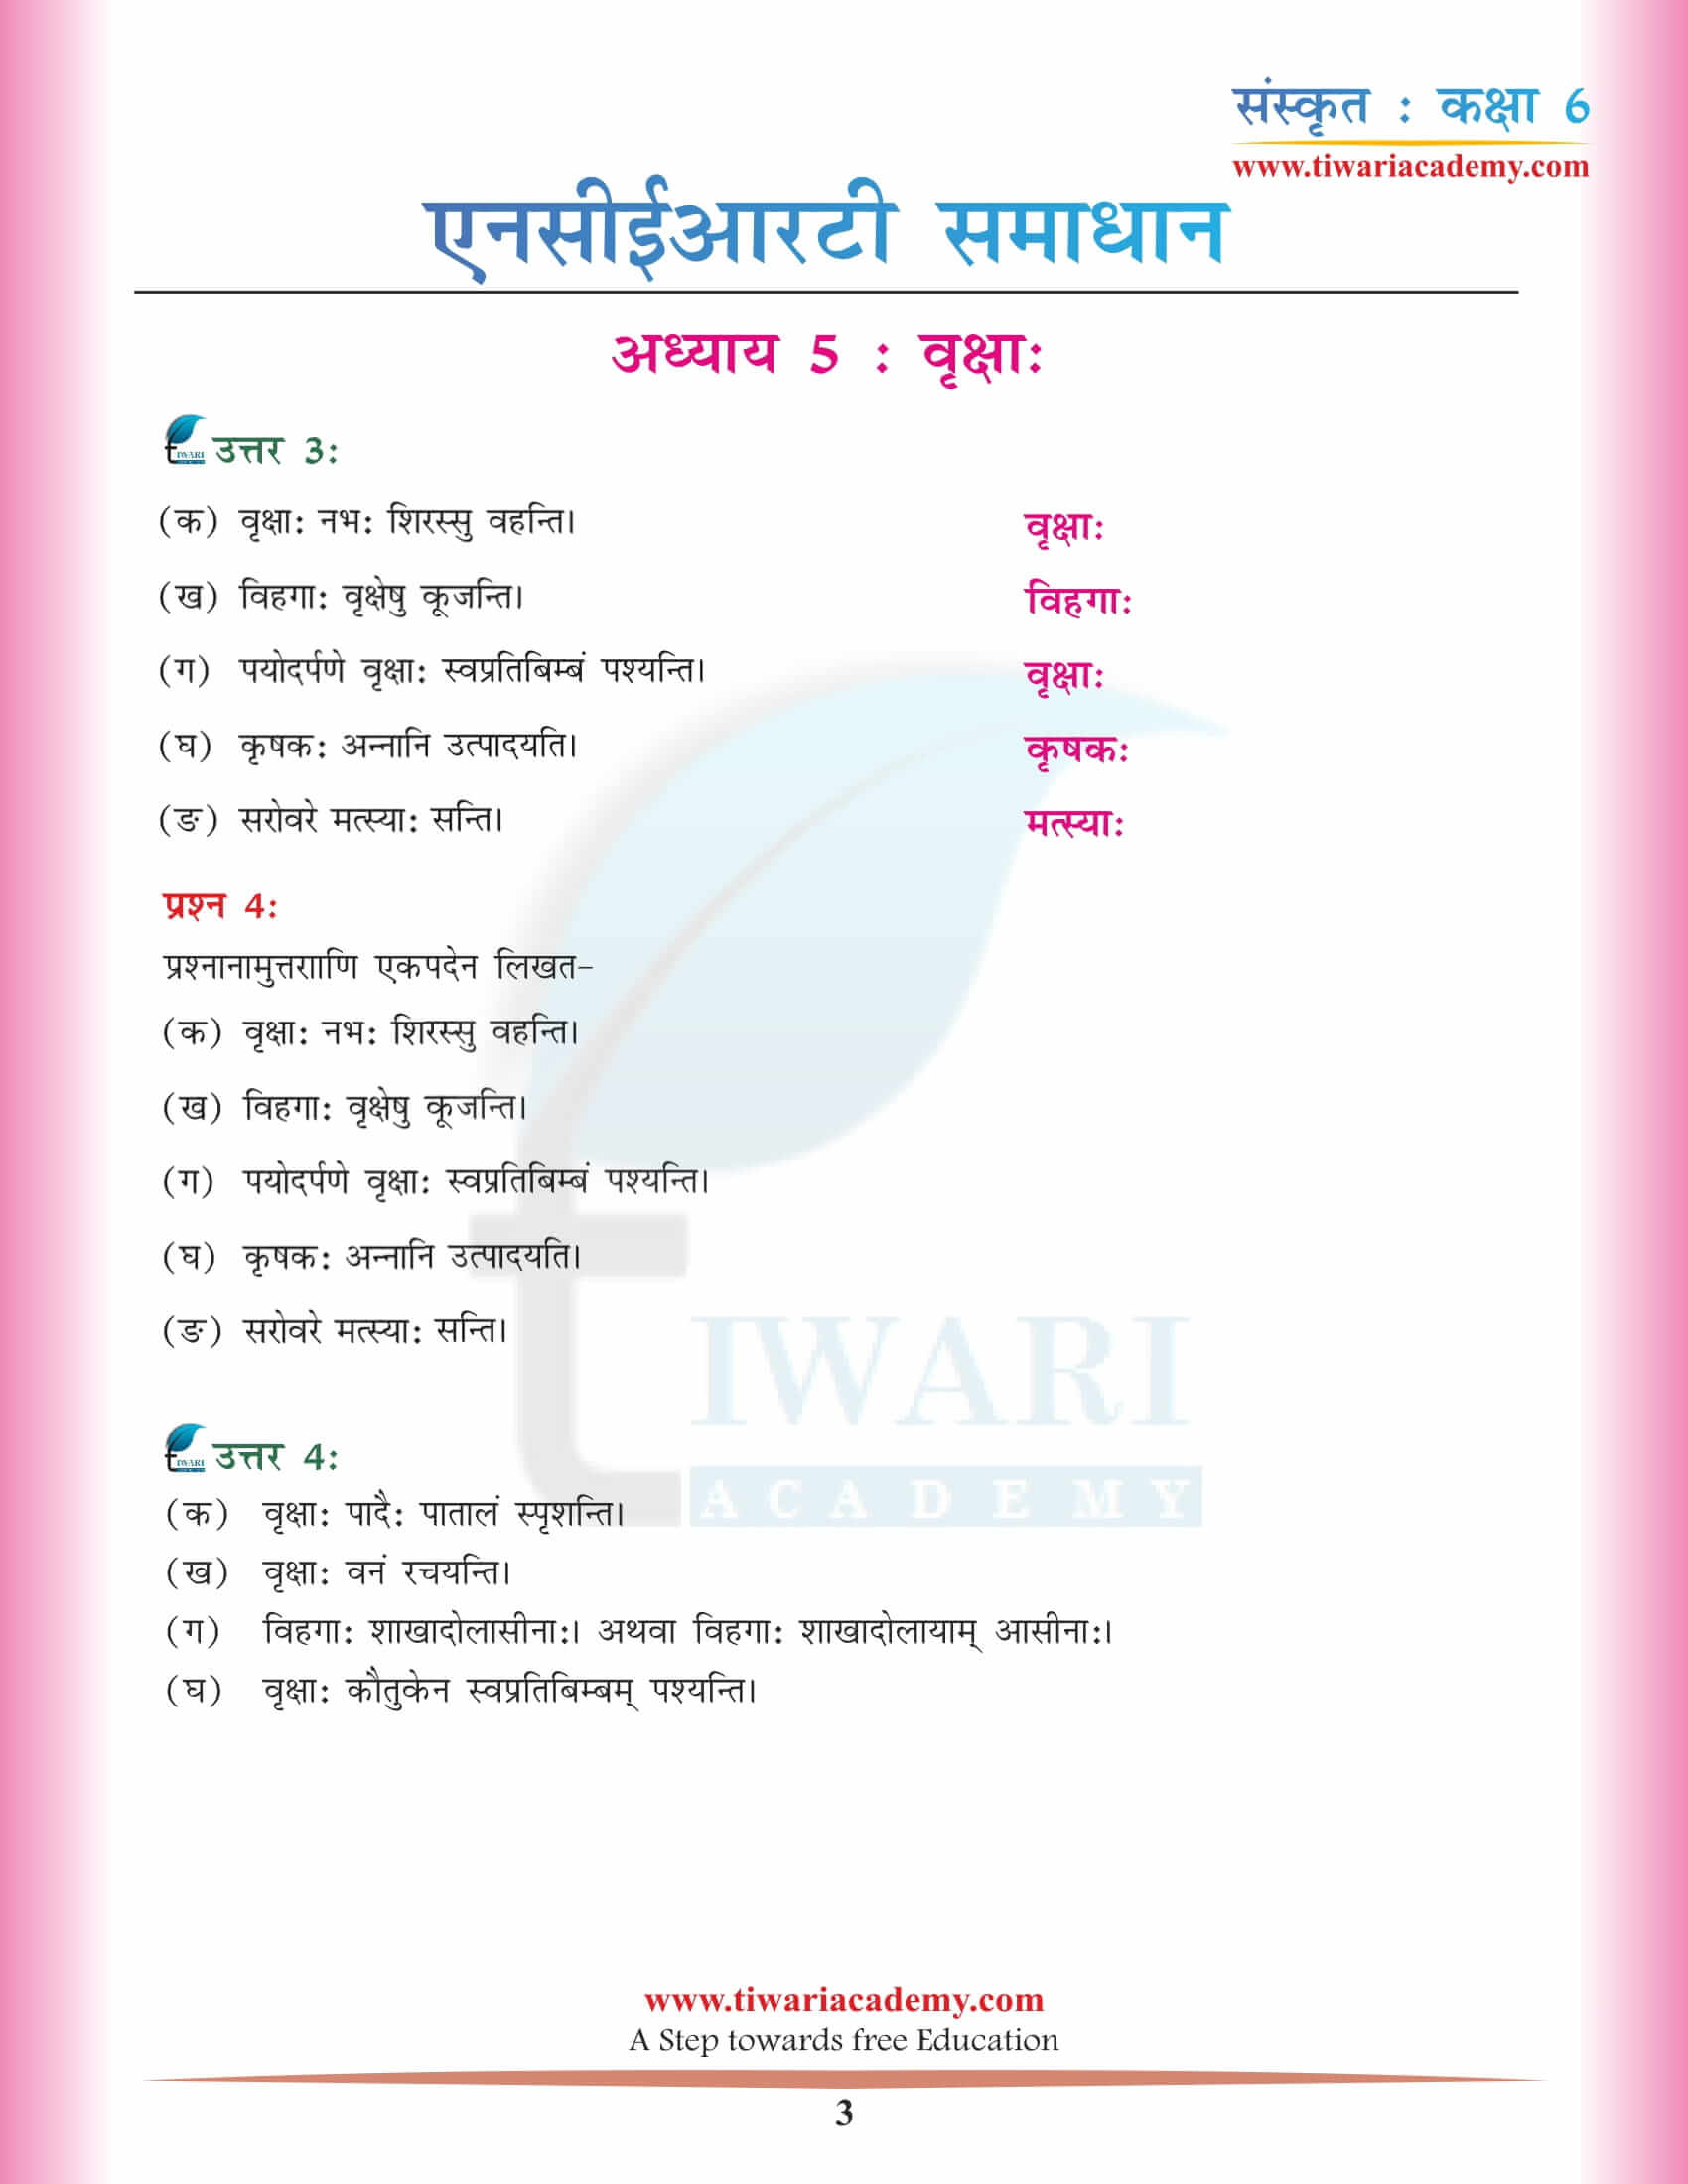 कक्षा 6 संस्कृत अध्याय 5 एनसीईआरटी हिंदी में